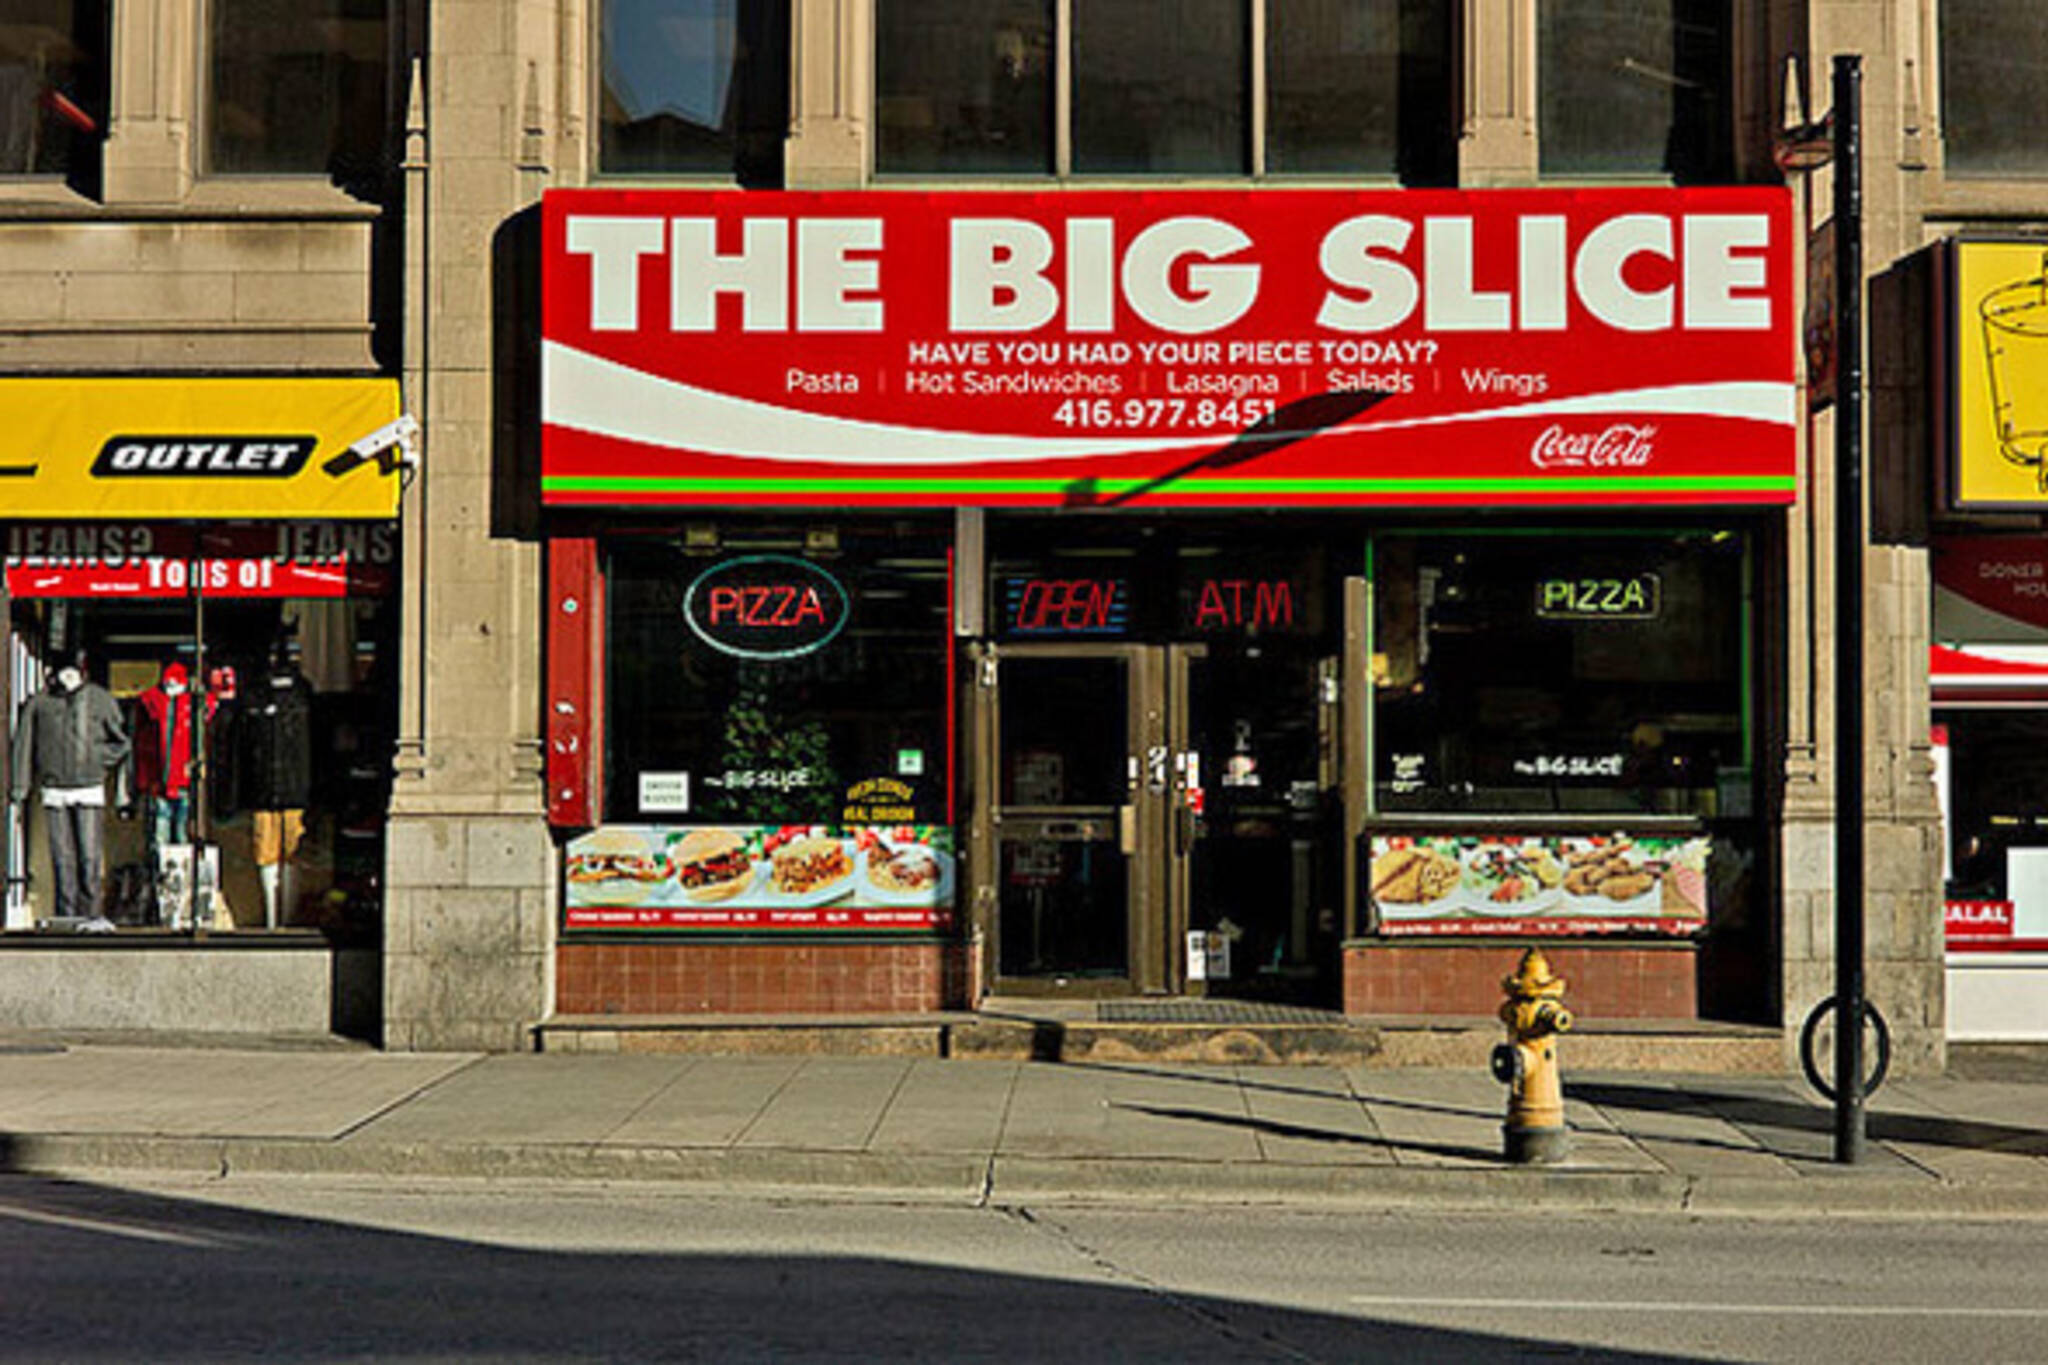 the big slice